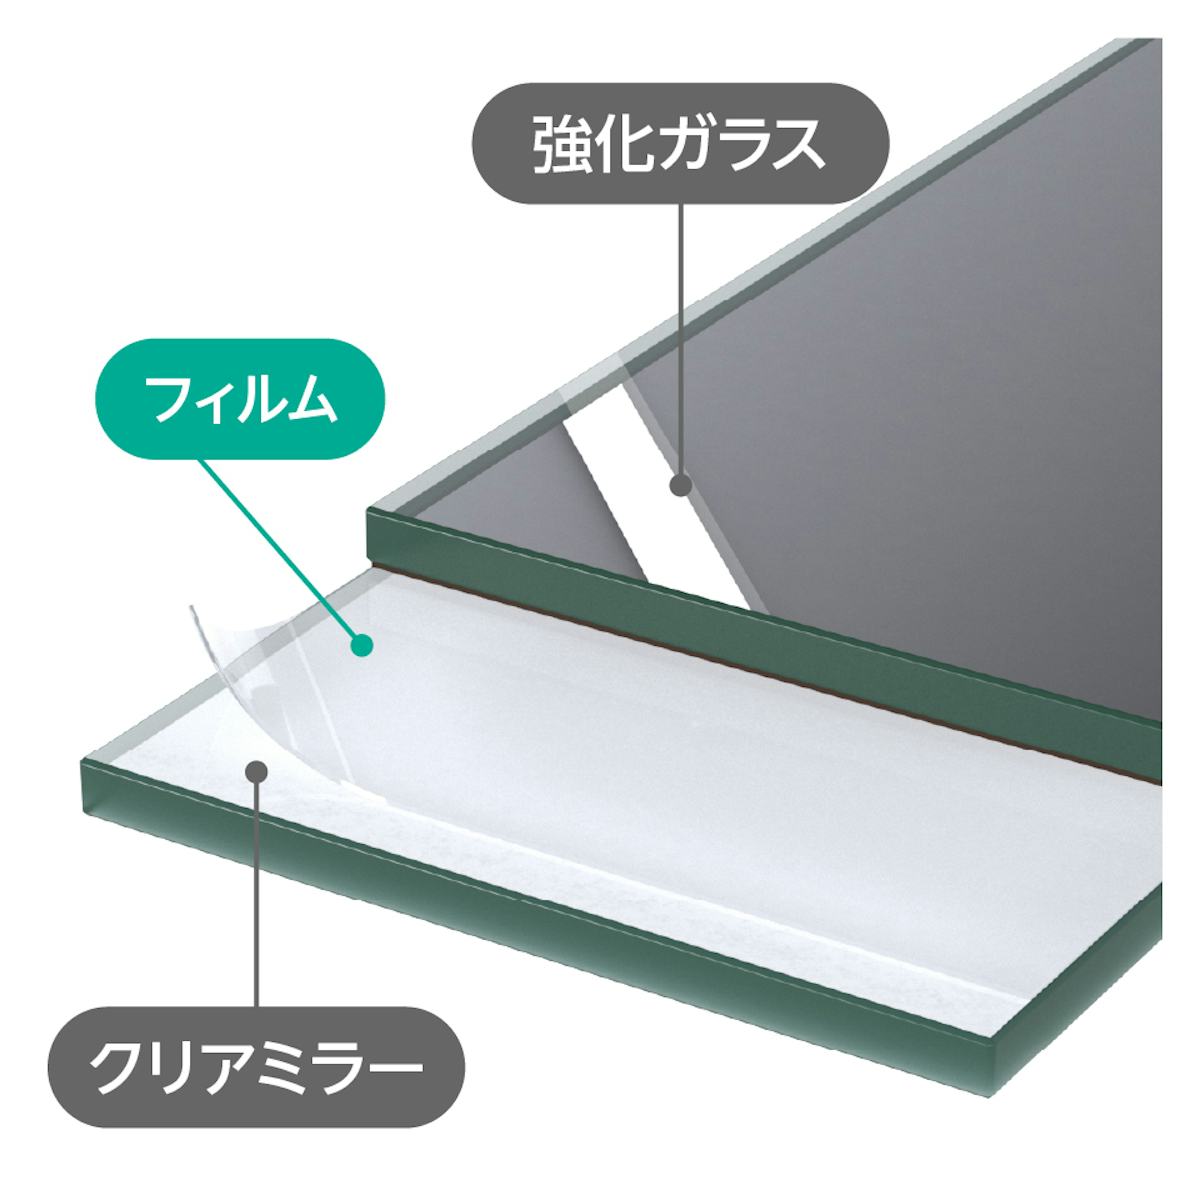 「床用ミラー」は、クリアミラーと強化ガラスが合わさった強度が高い鏡